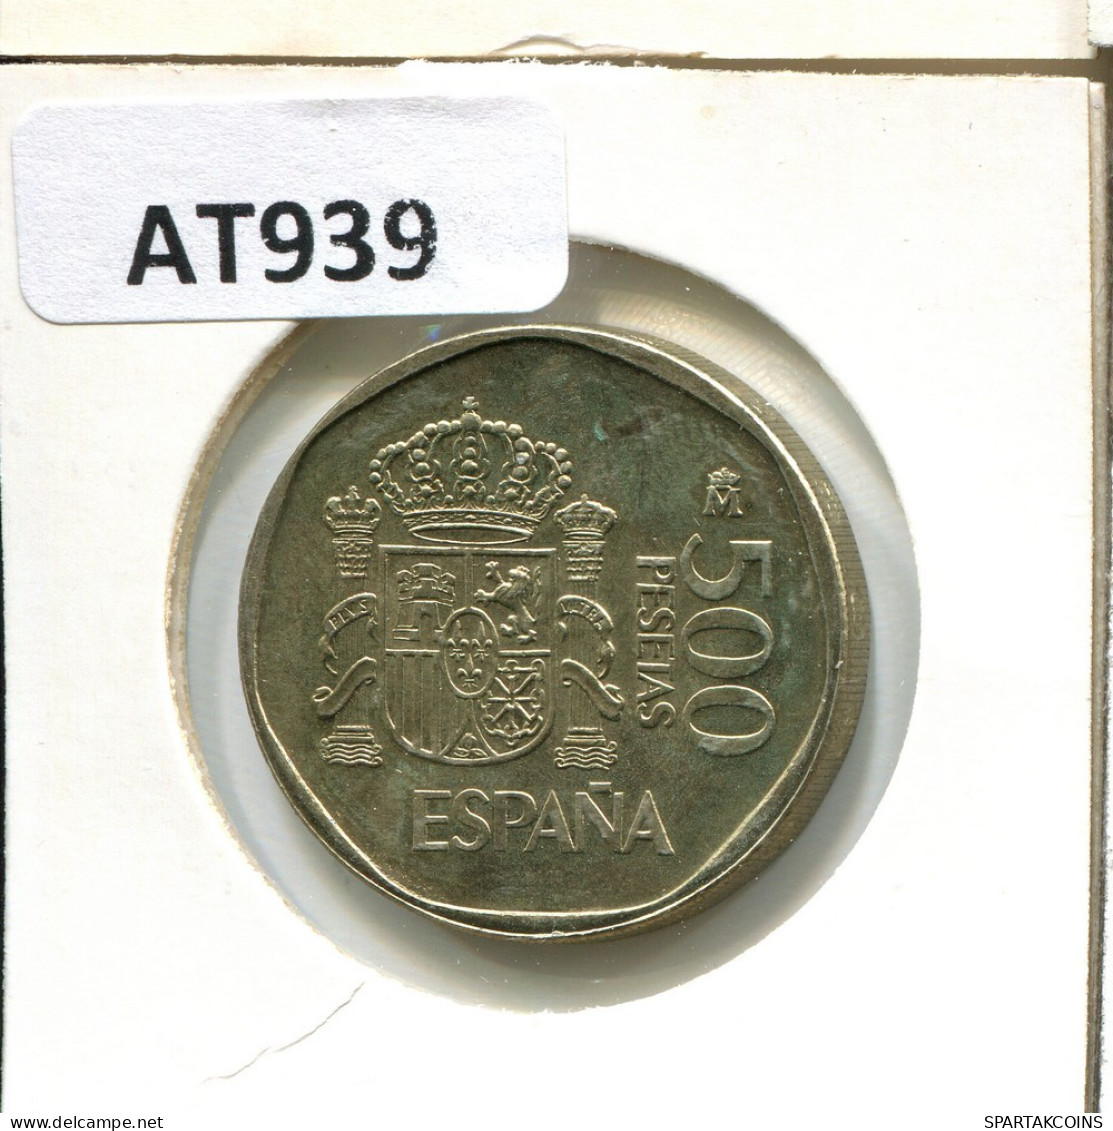 500 PESETAS 1988 ESPAÑA Moneda SPAIN #AT939.E.A - 500 Pesetas